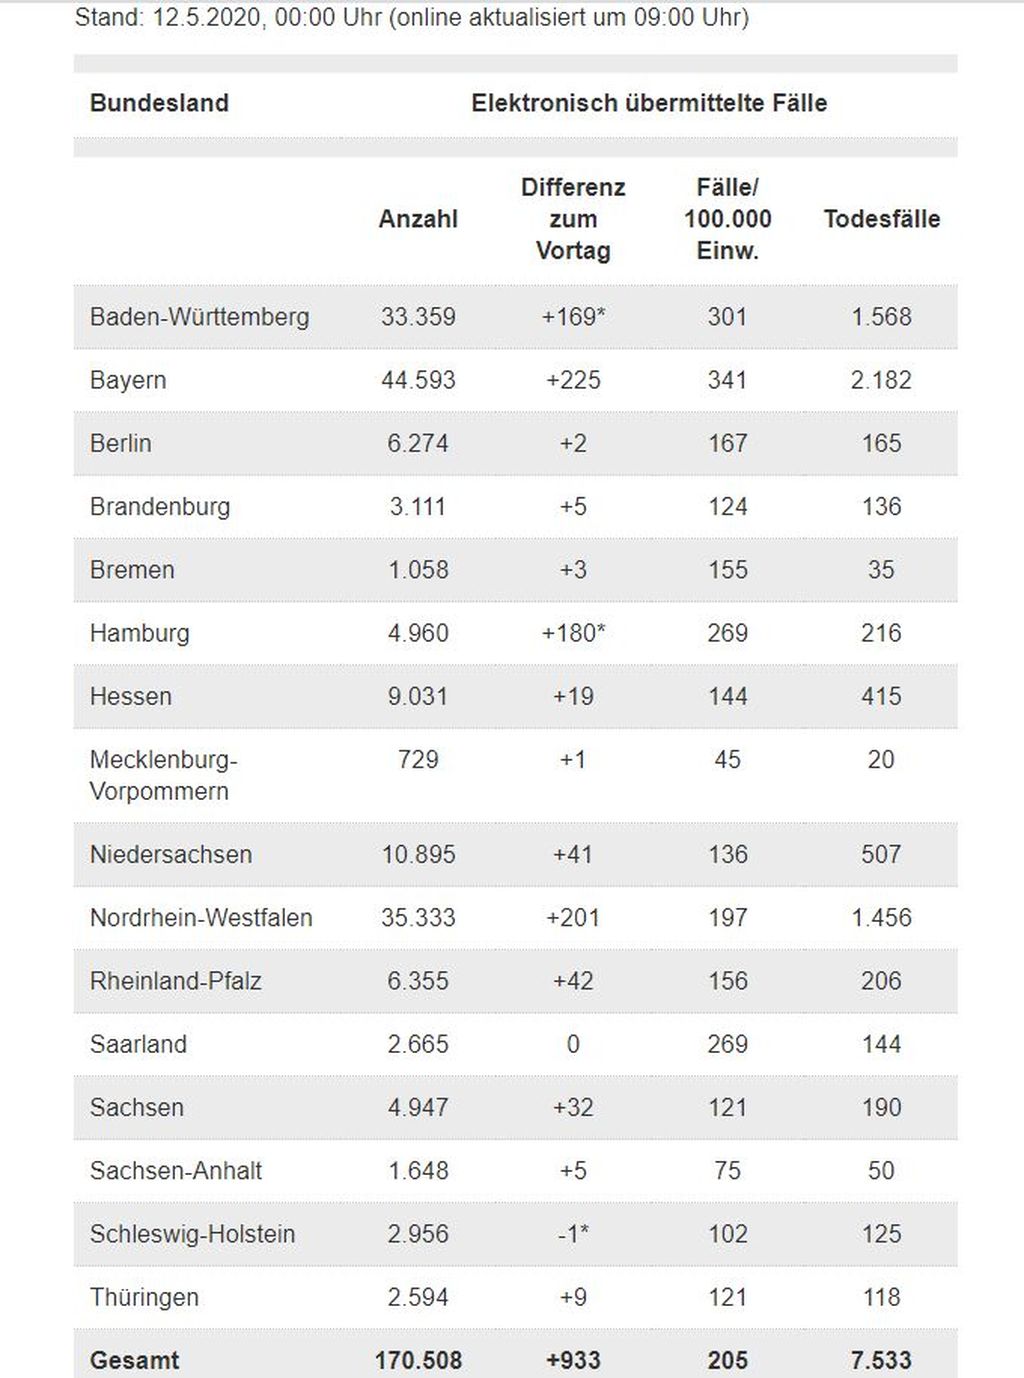 Broj oboljelih u Njemačkoj